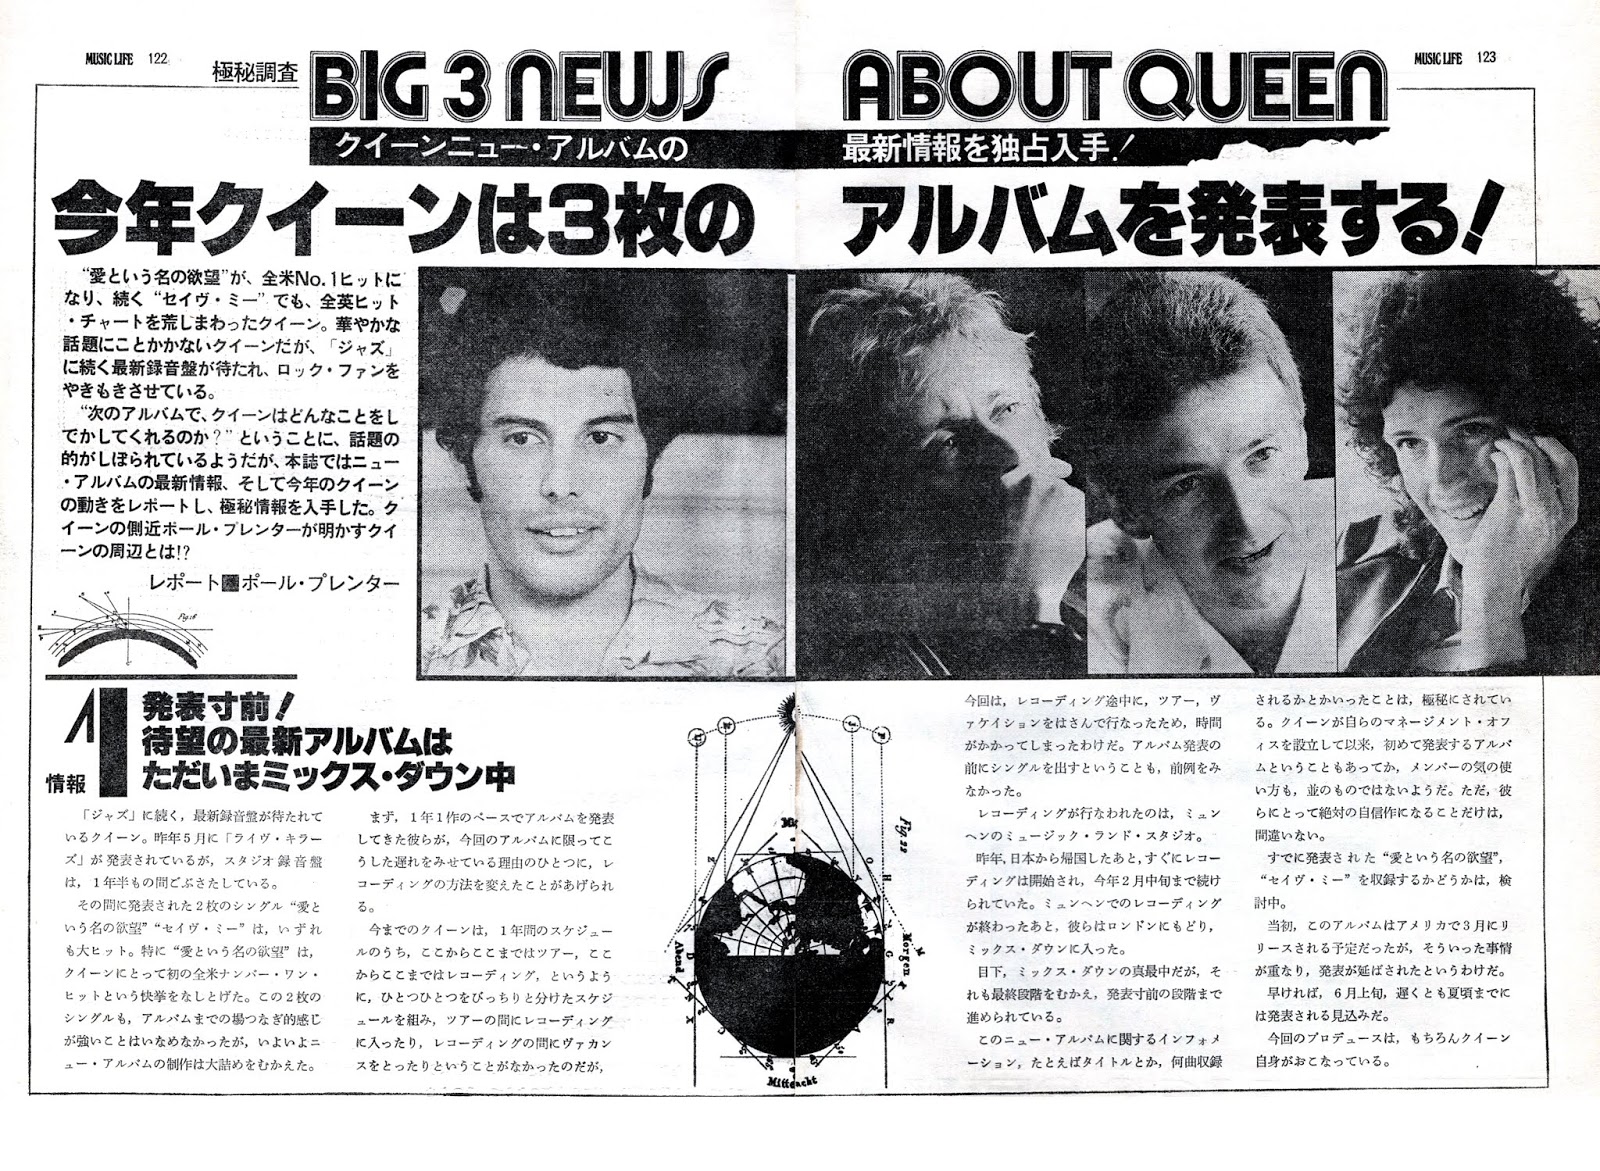 Freddie Mercury Queen Music Life Special feature 2019 Magazine